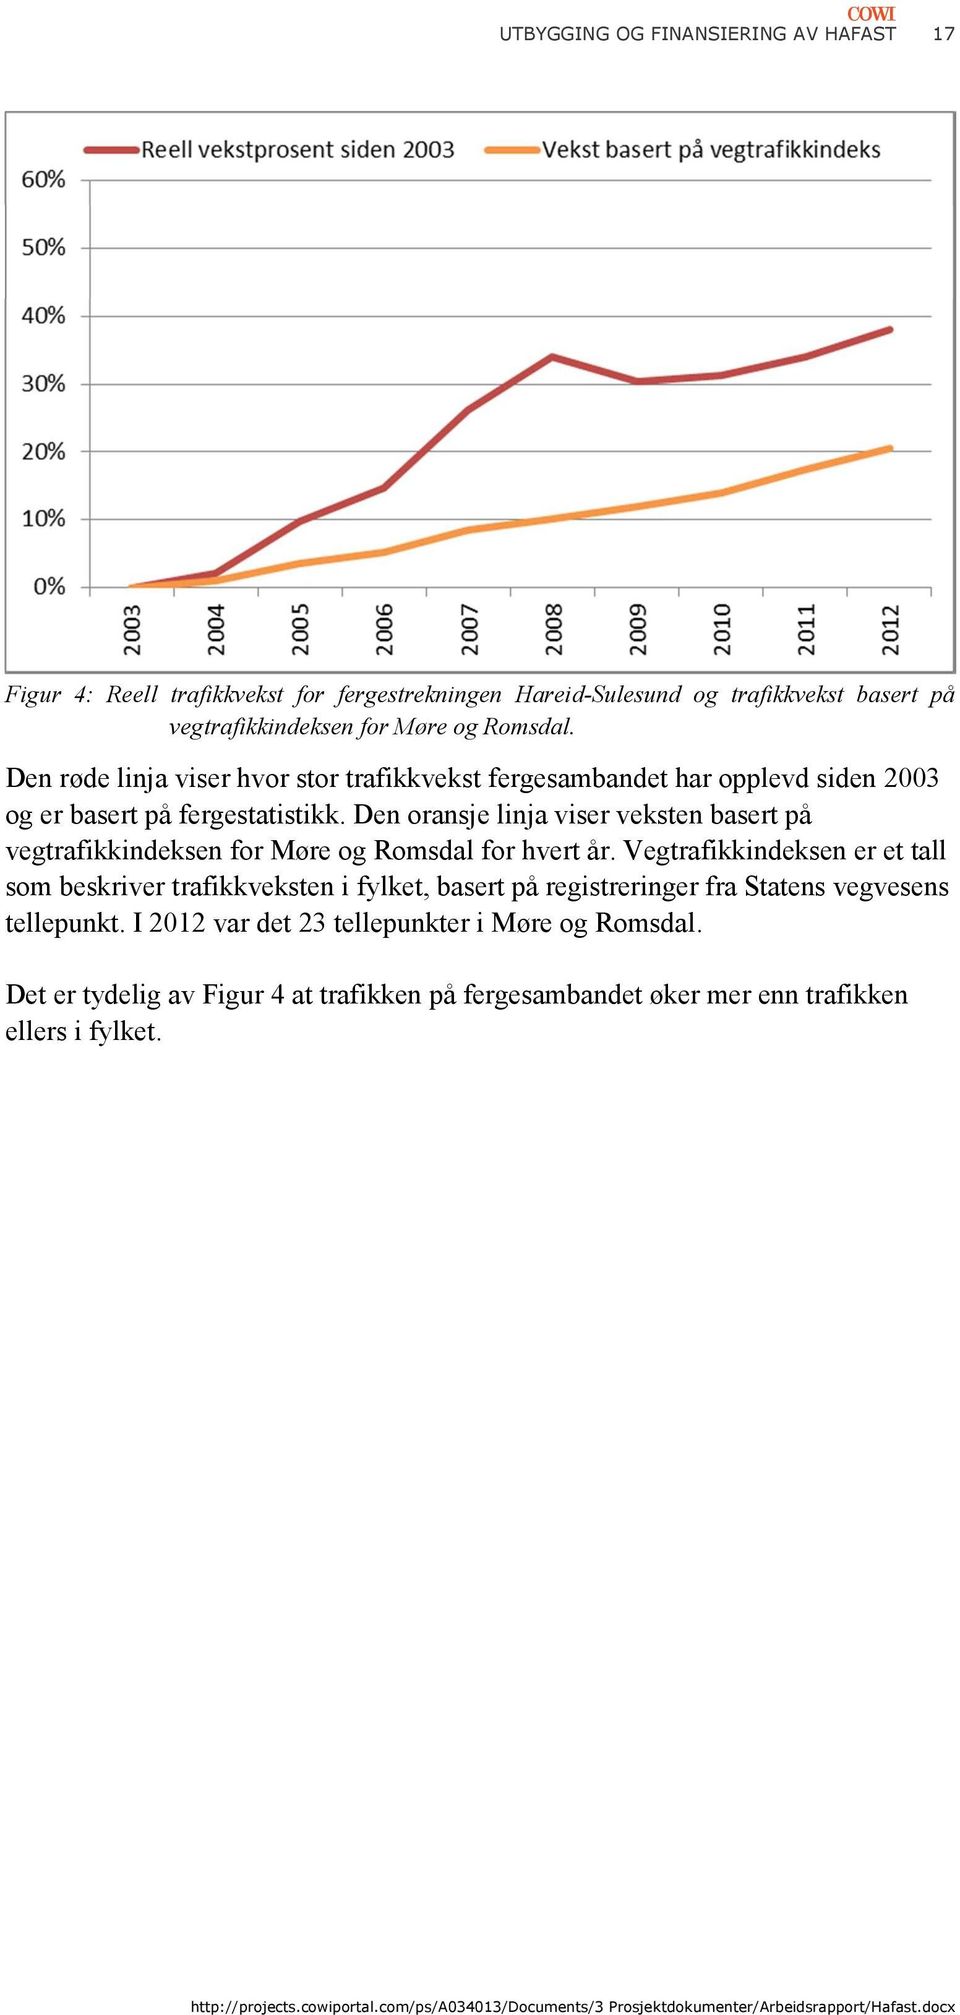 Den oransje linja viser veksten basert på vegtrafikkindeksen for Møre og Romsdal for hvert år.